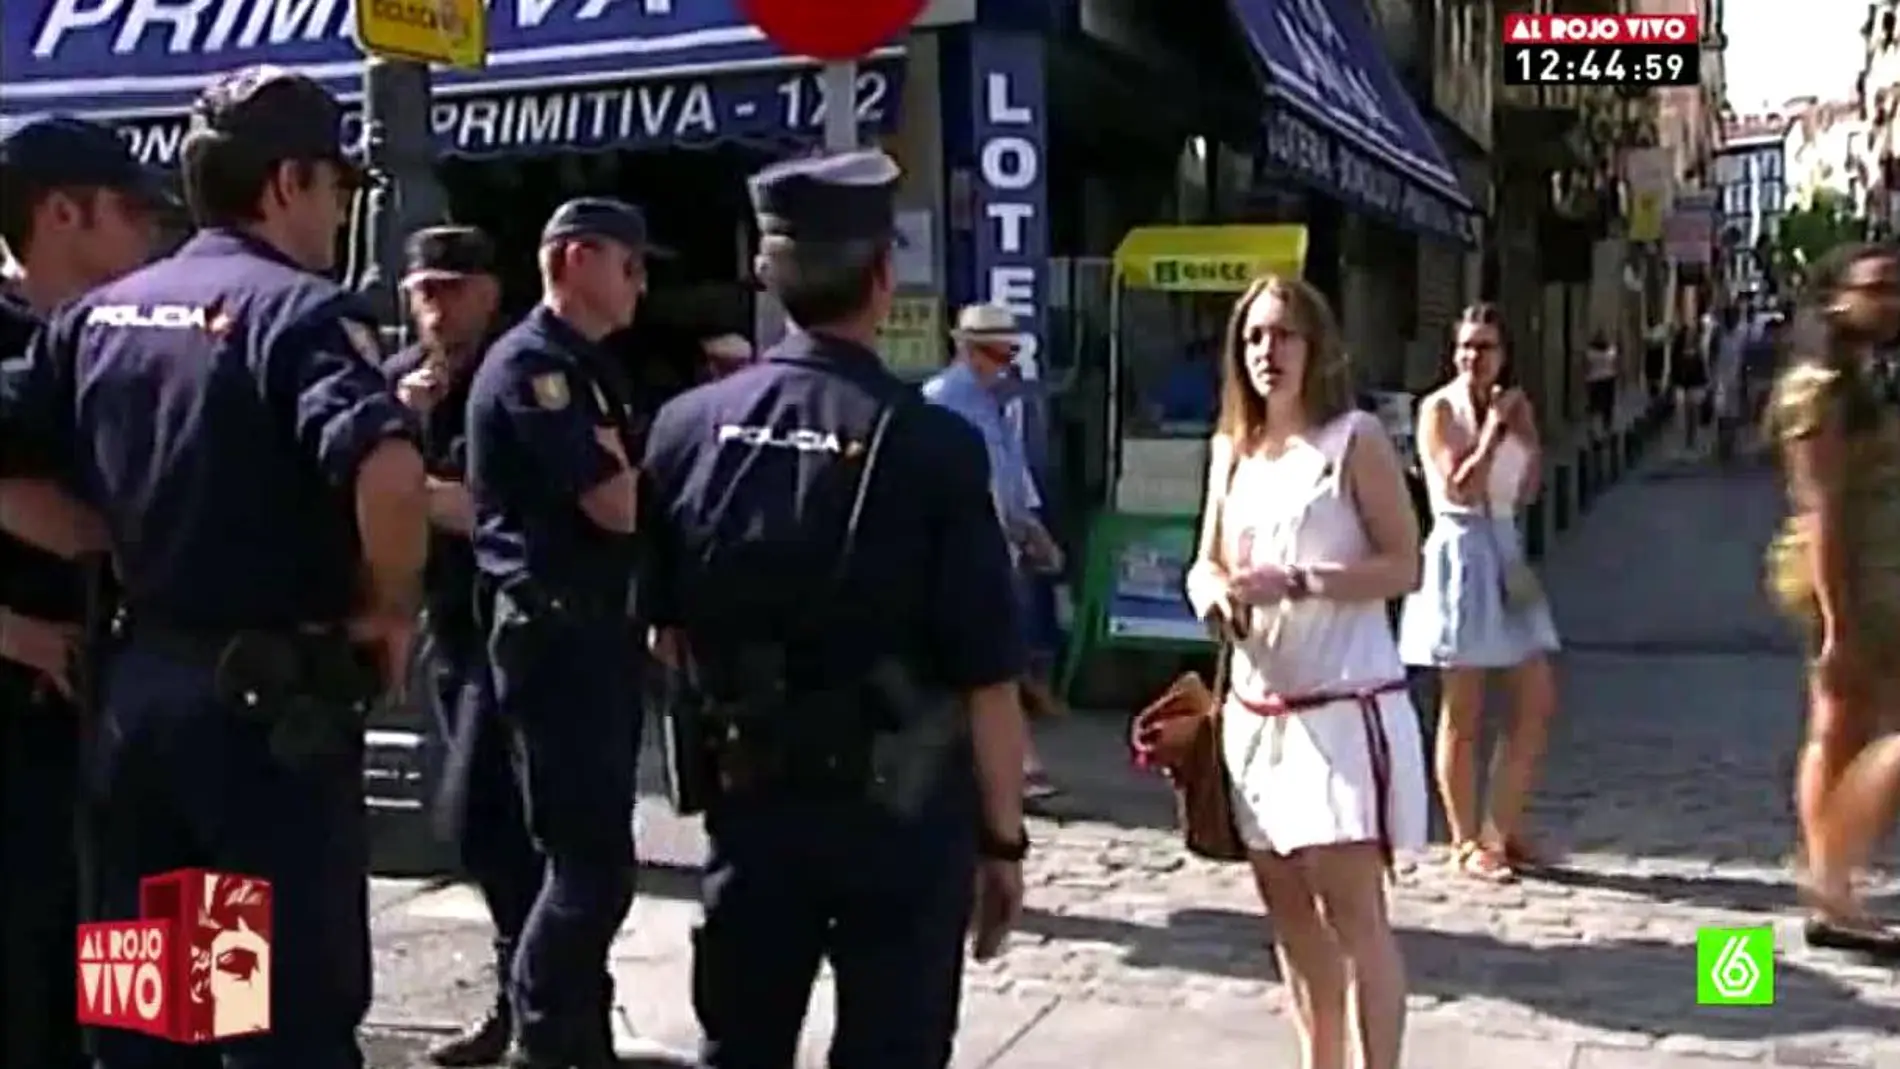 La Policía impide a una joven el paso por llevar una chapa